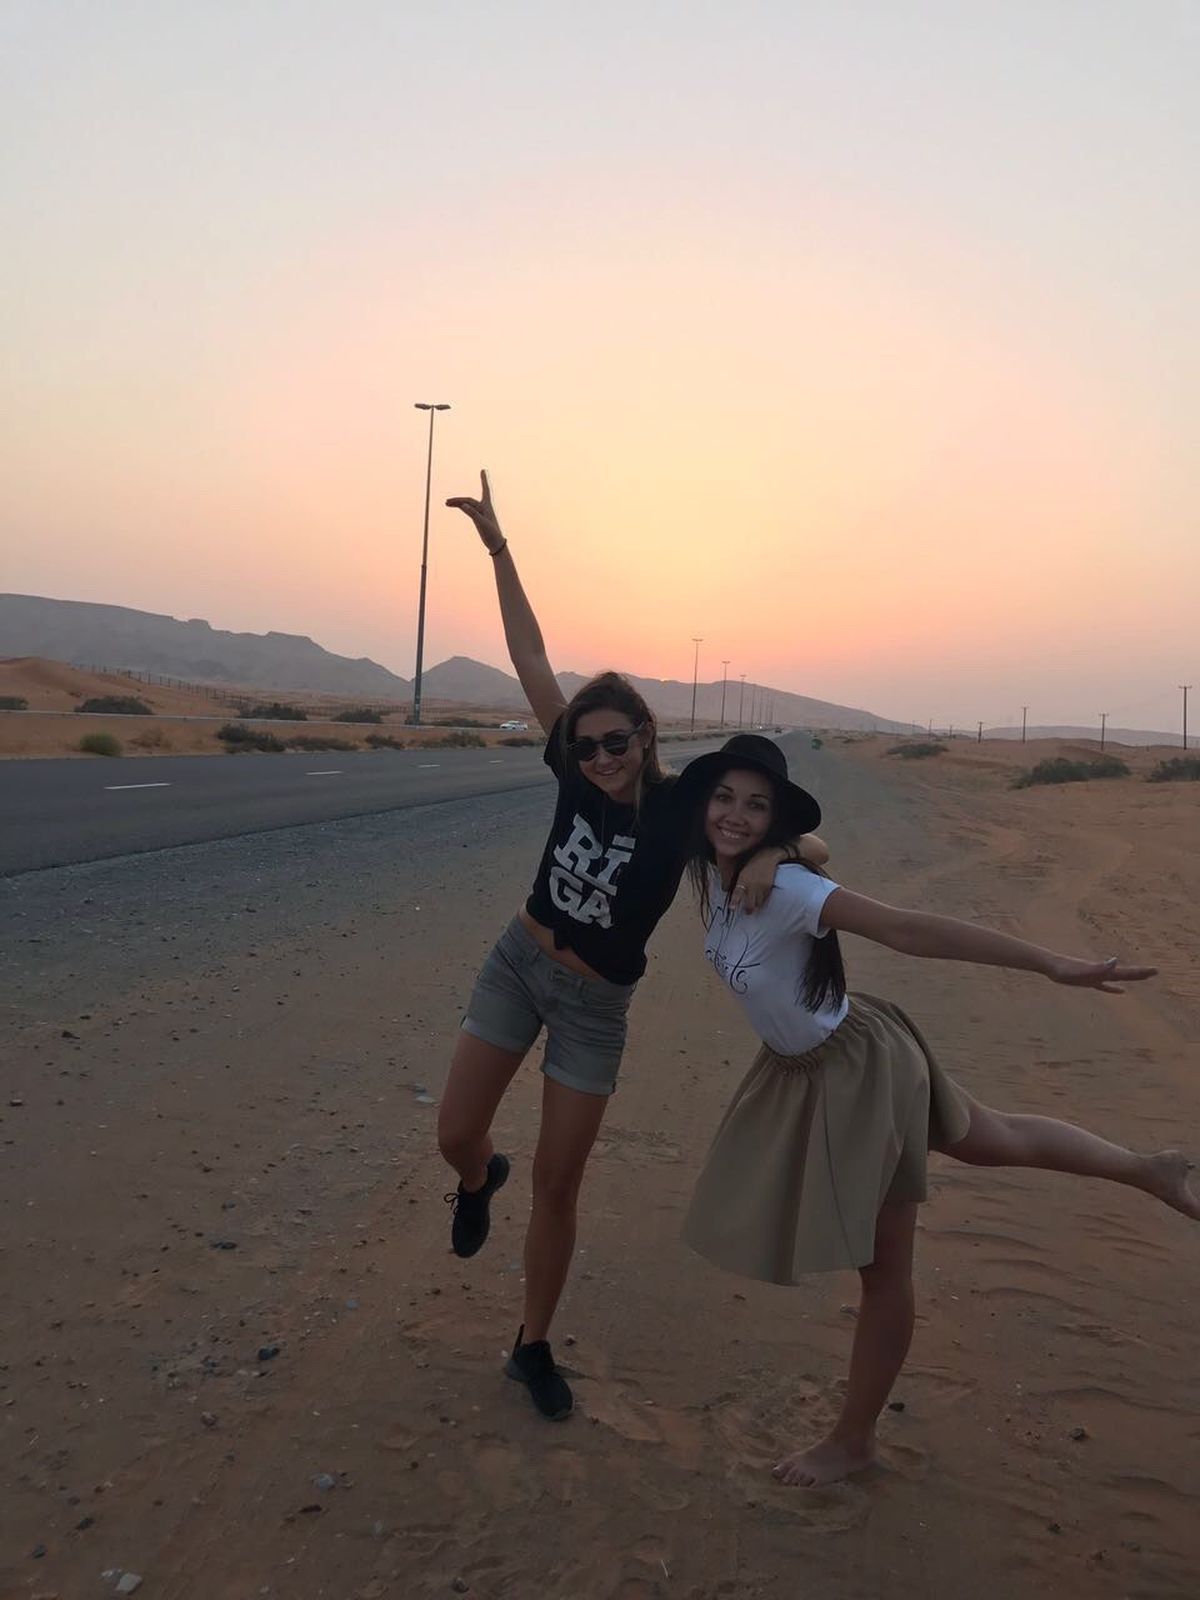 Синтия и ее лучшая подруга празднуют Лиго в Дубае